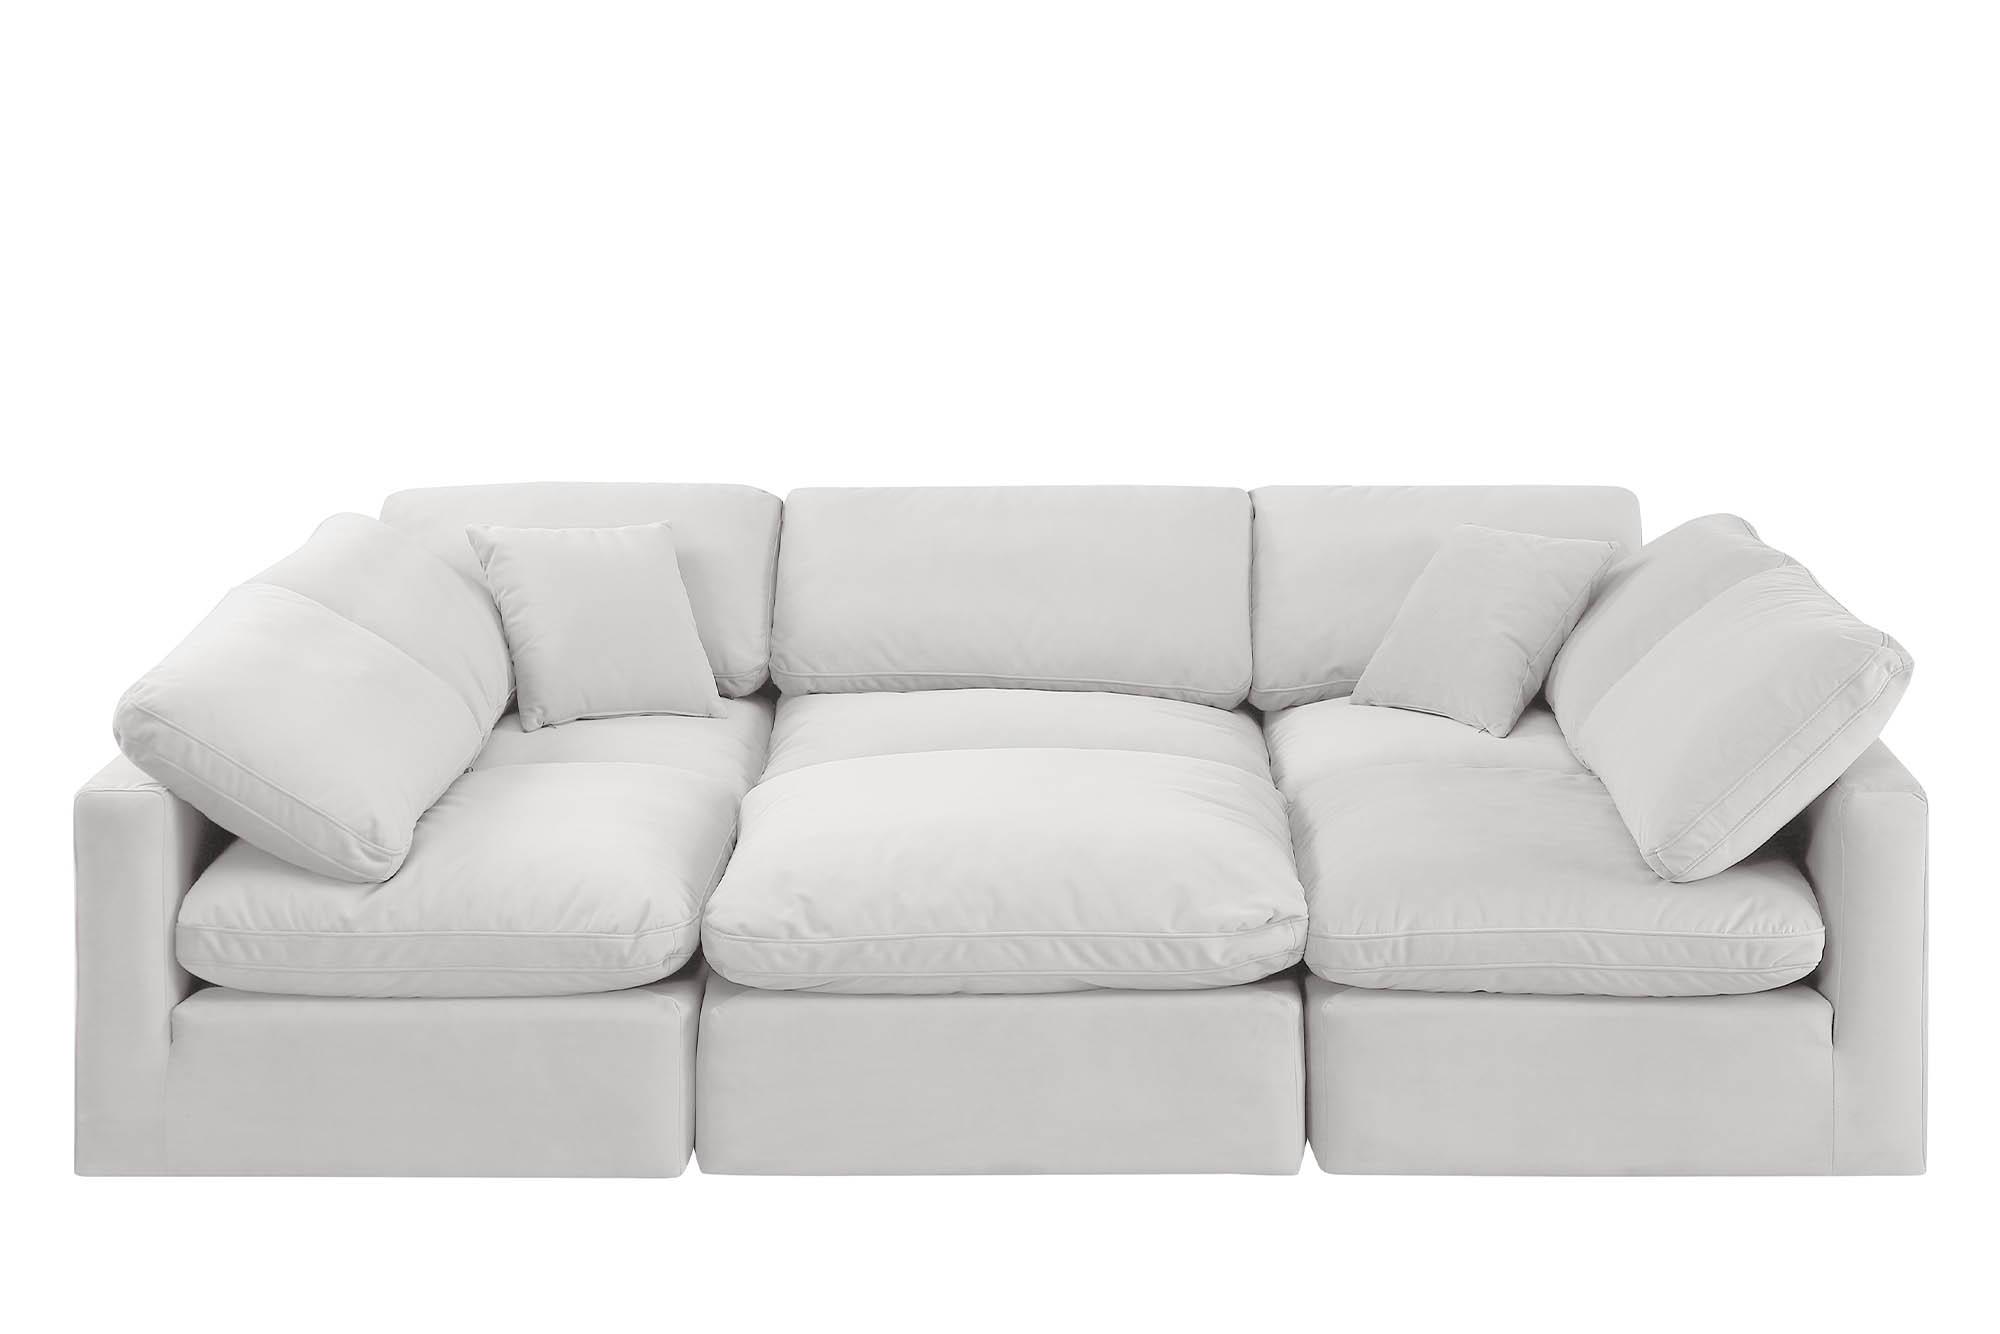 

    
Meridian Furniture INDULGE 147Cream-Sec6C Modular Sectional Sofa Cream 147Cream-Sec6C
